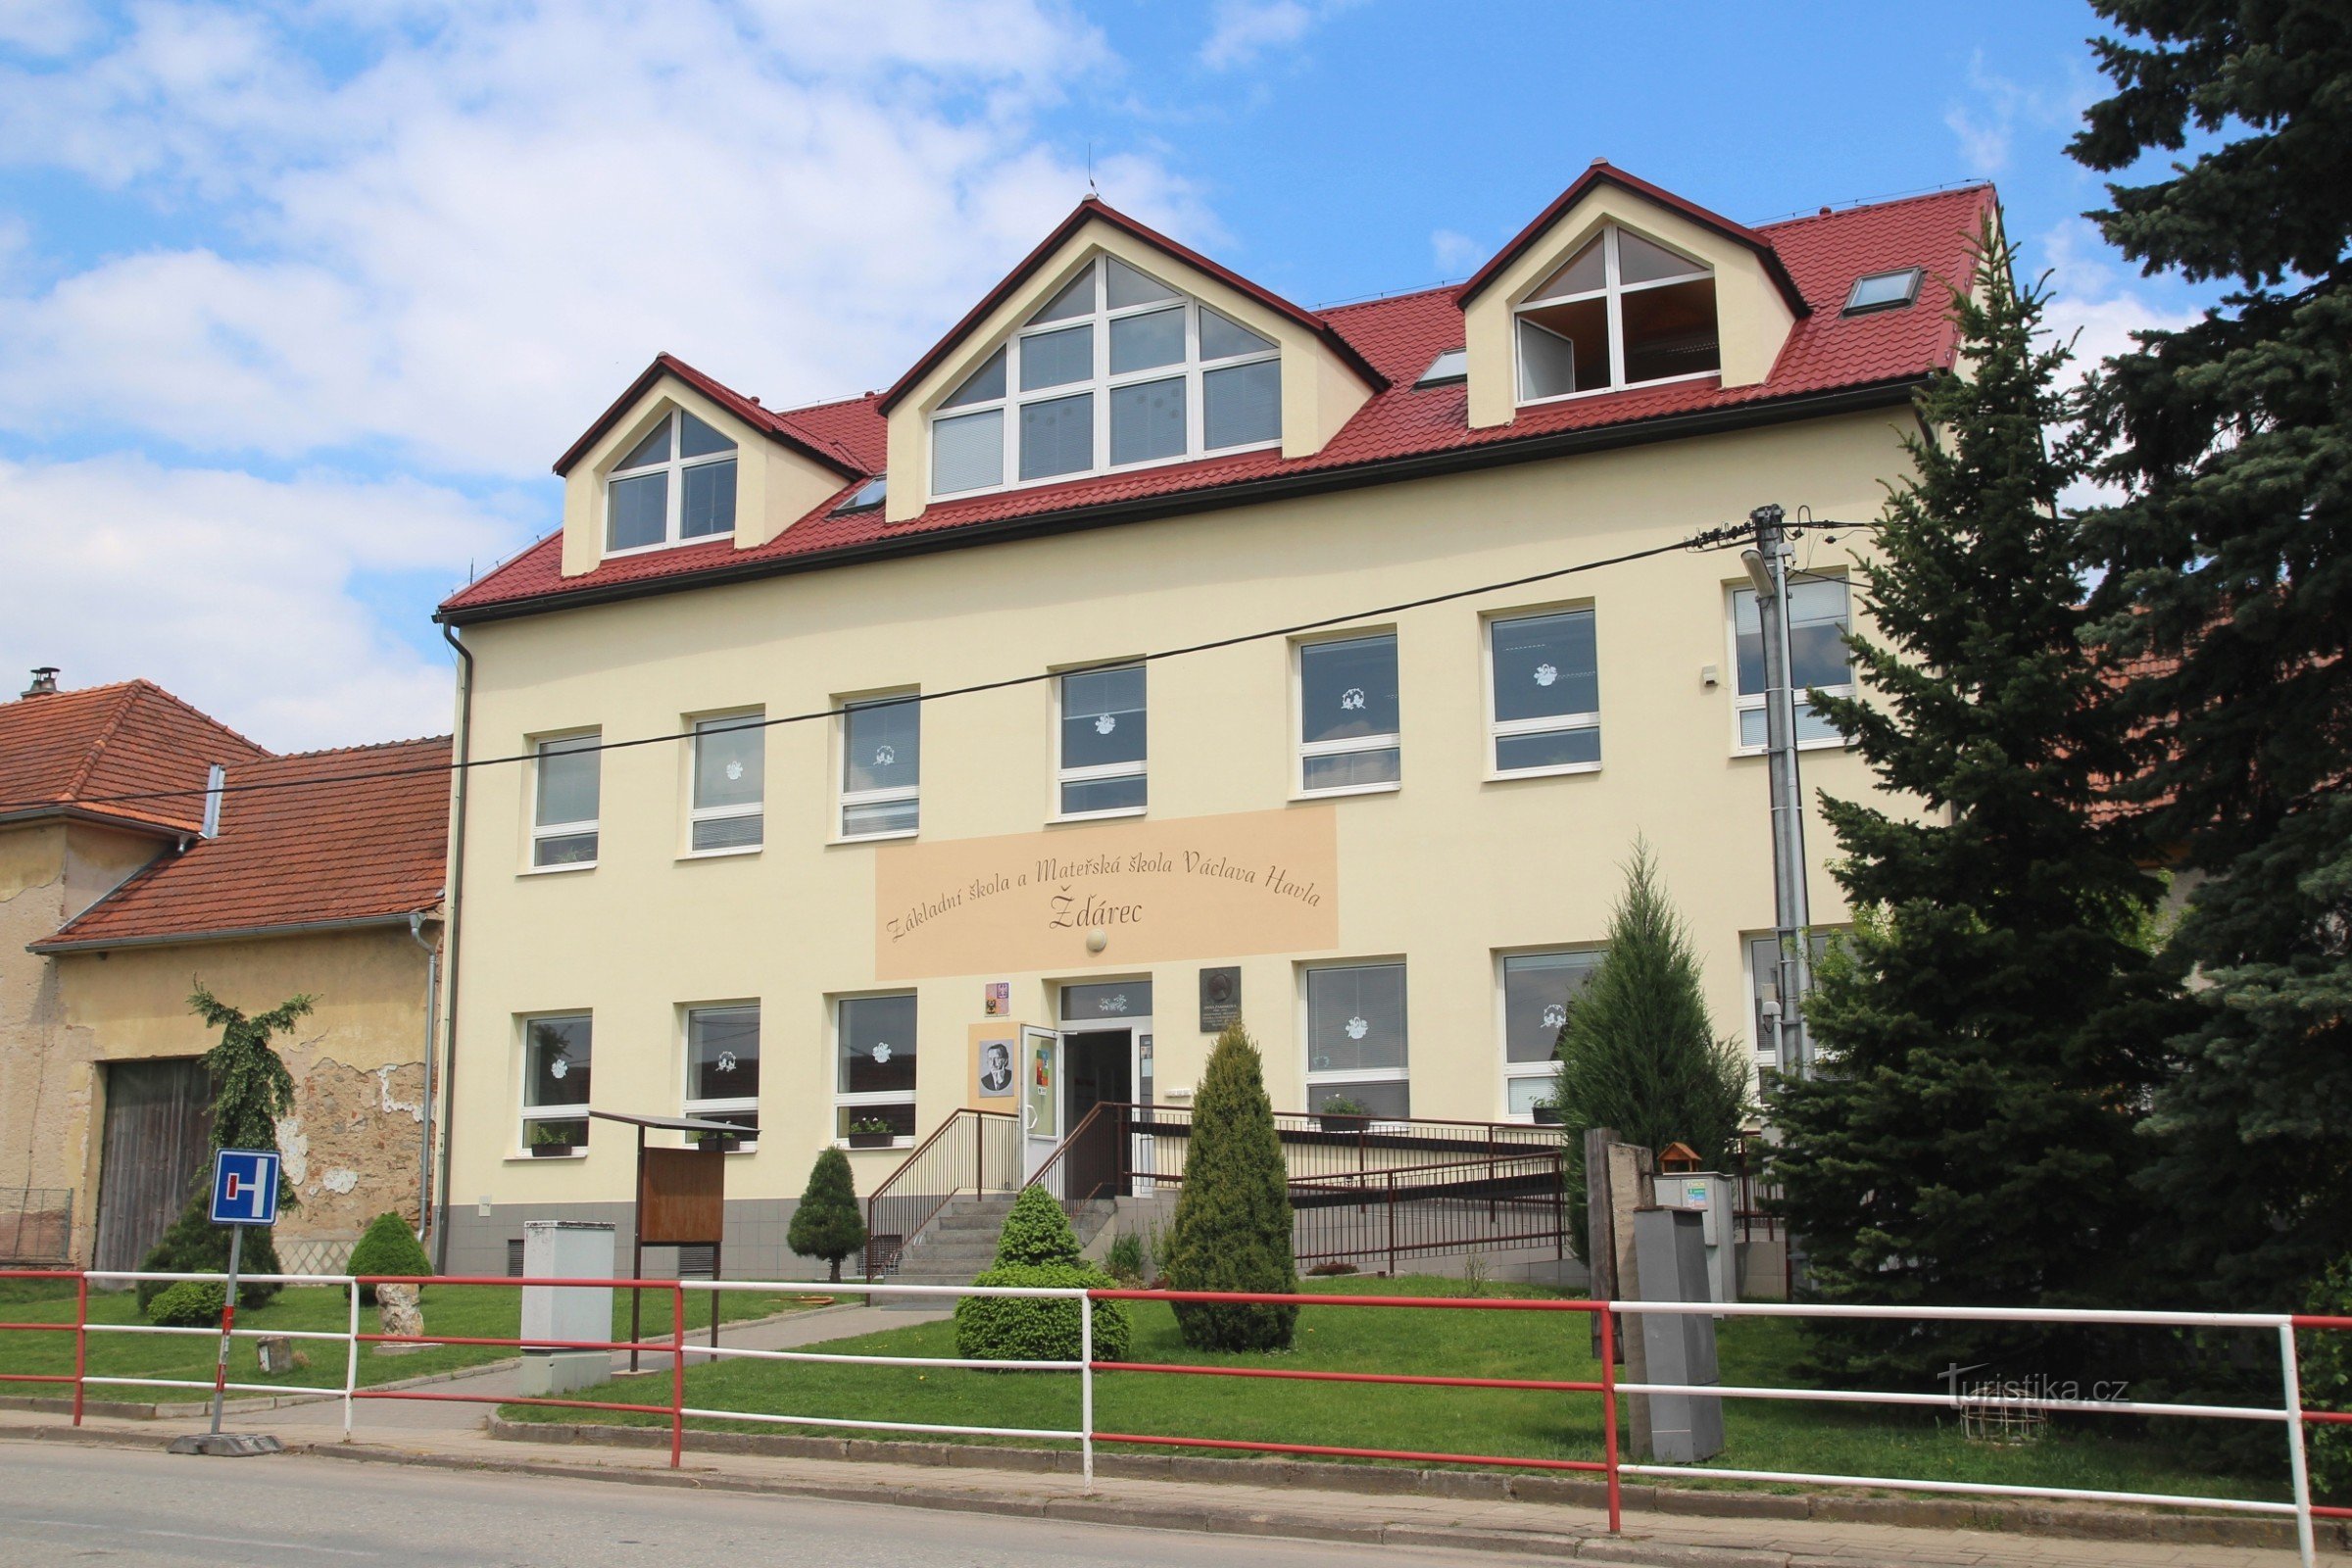 Δημοτικό Σχολείο Václav Havel στο Žďárec